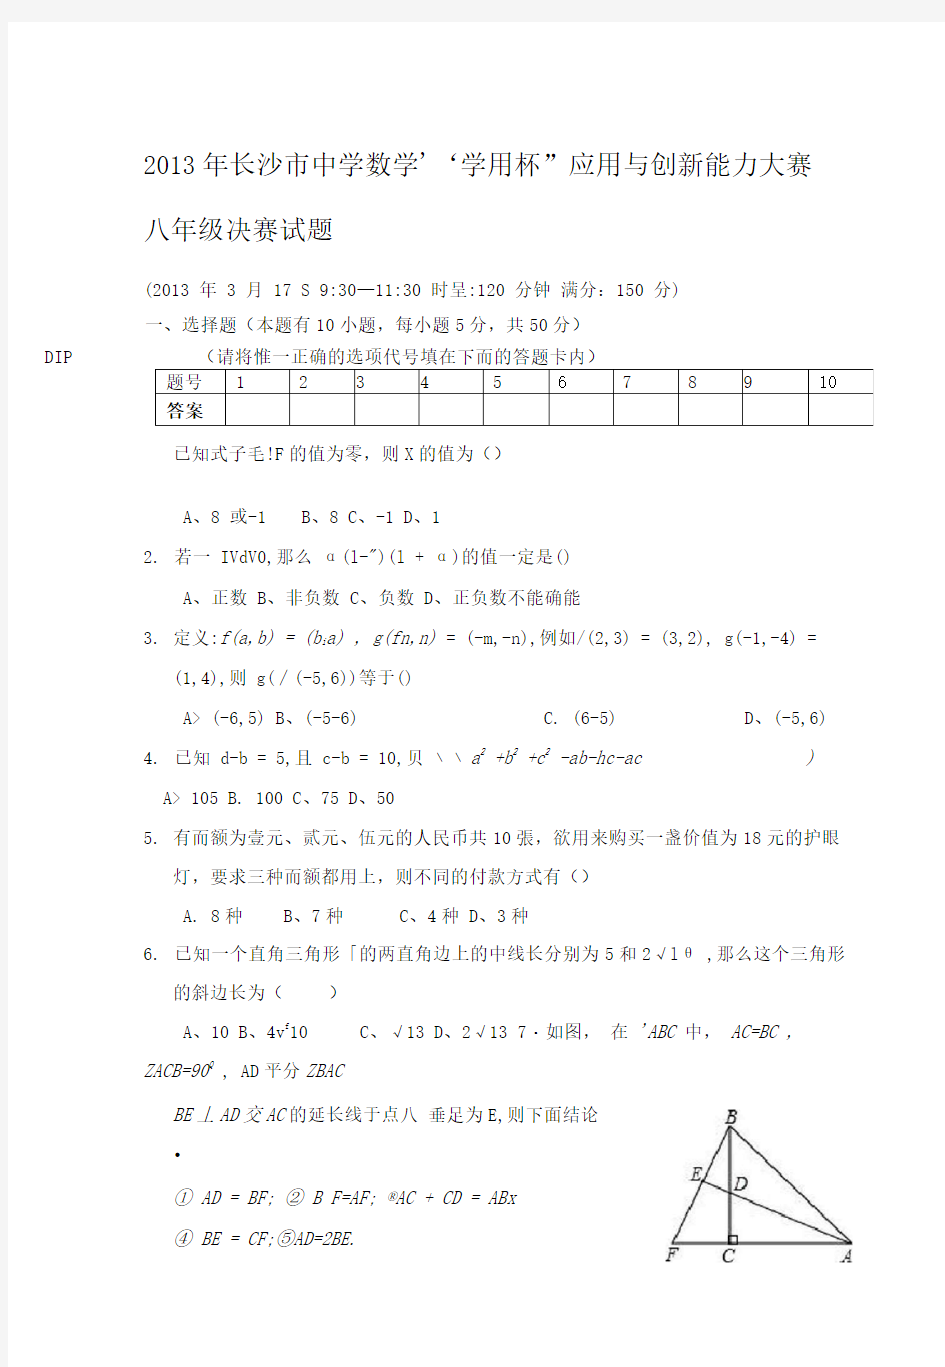 长沙市初中数学竞赛决赛试卷八年级定稿版